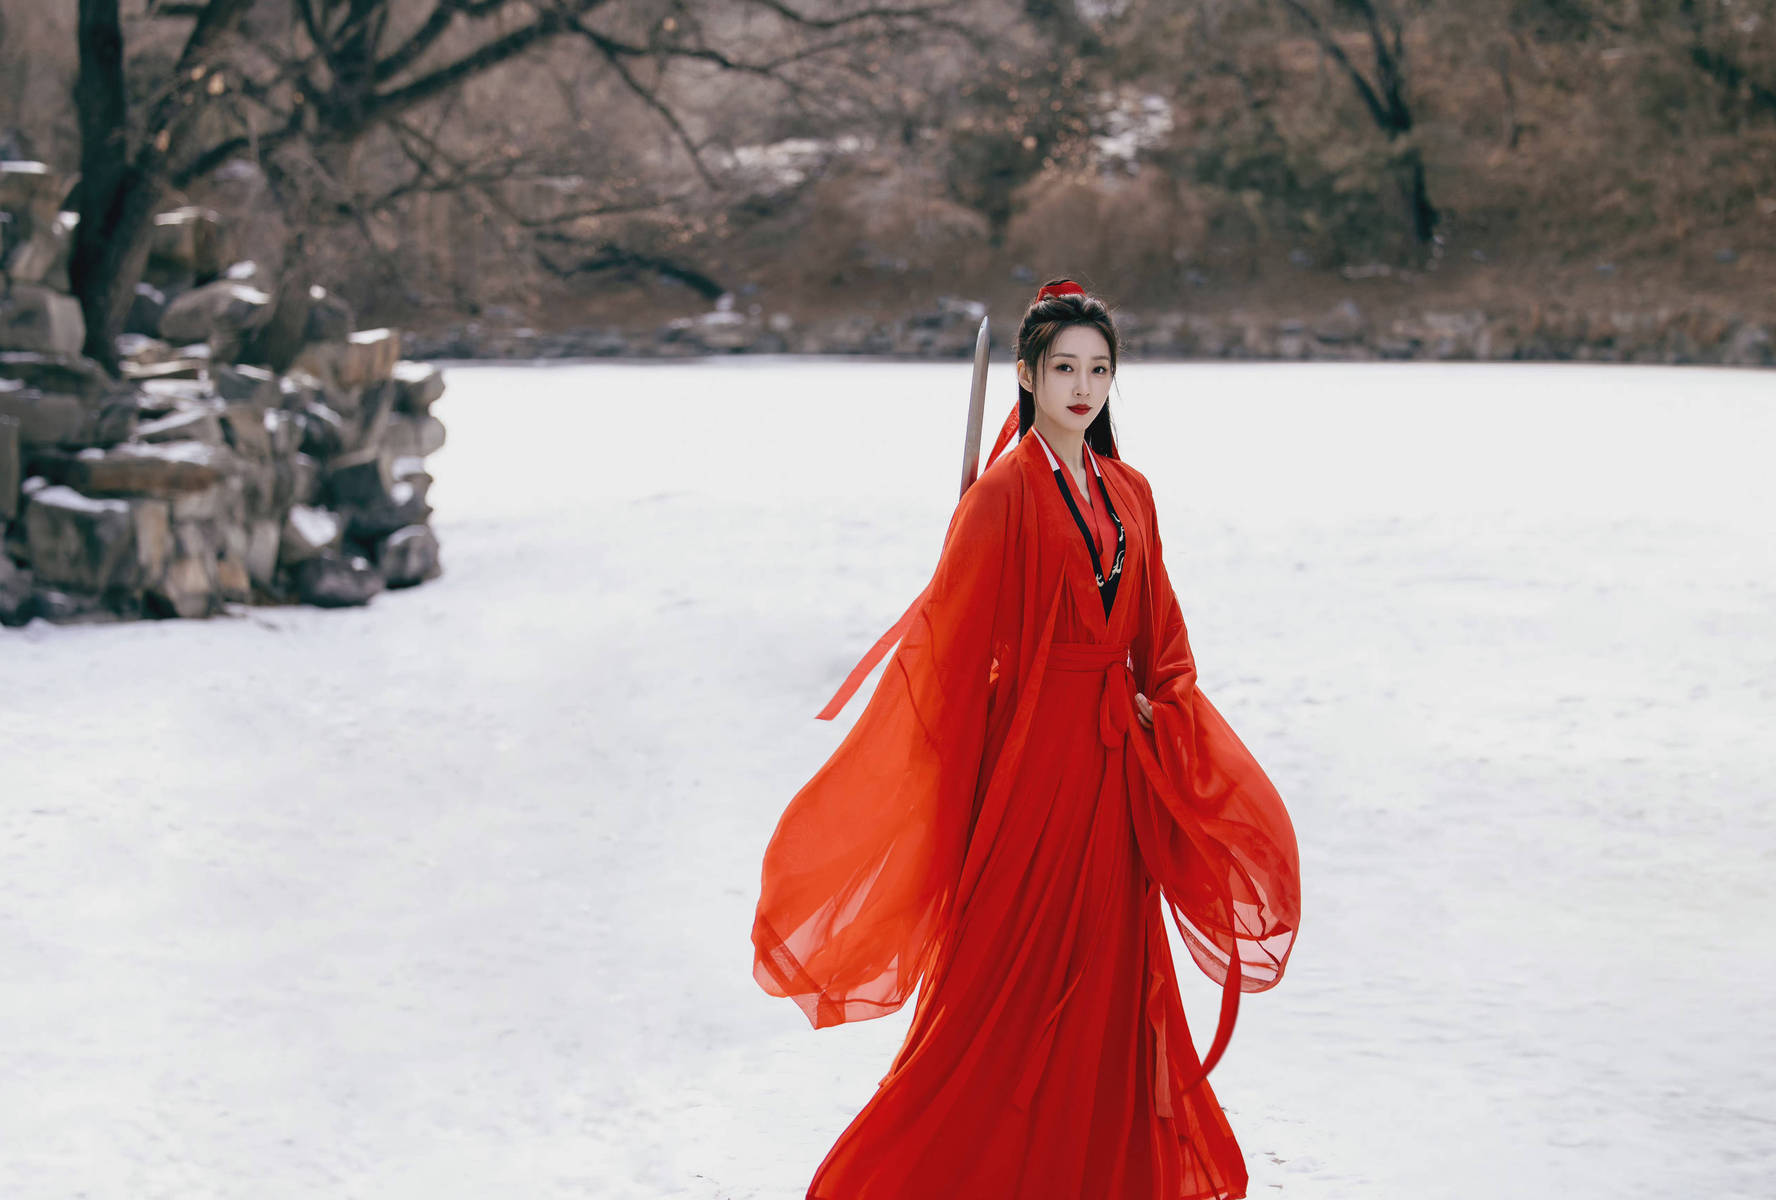 明星美女 - 哈妮克孜 红衣映雪，风卷长空。眉目含情，绰约多姿